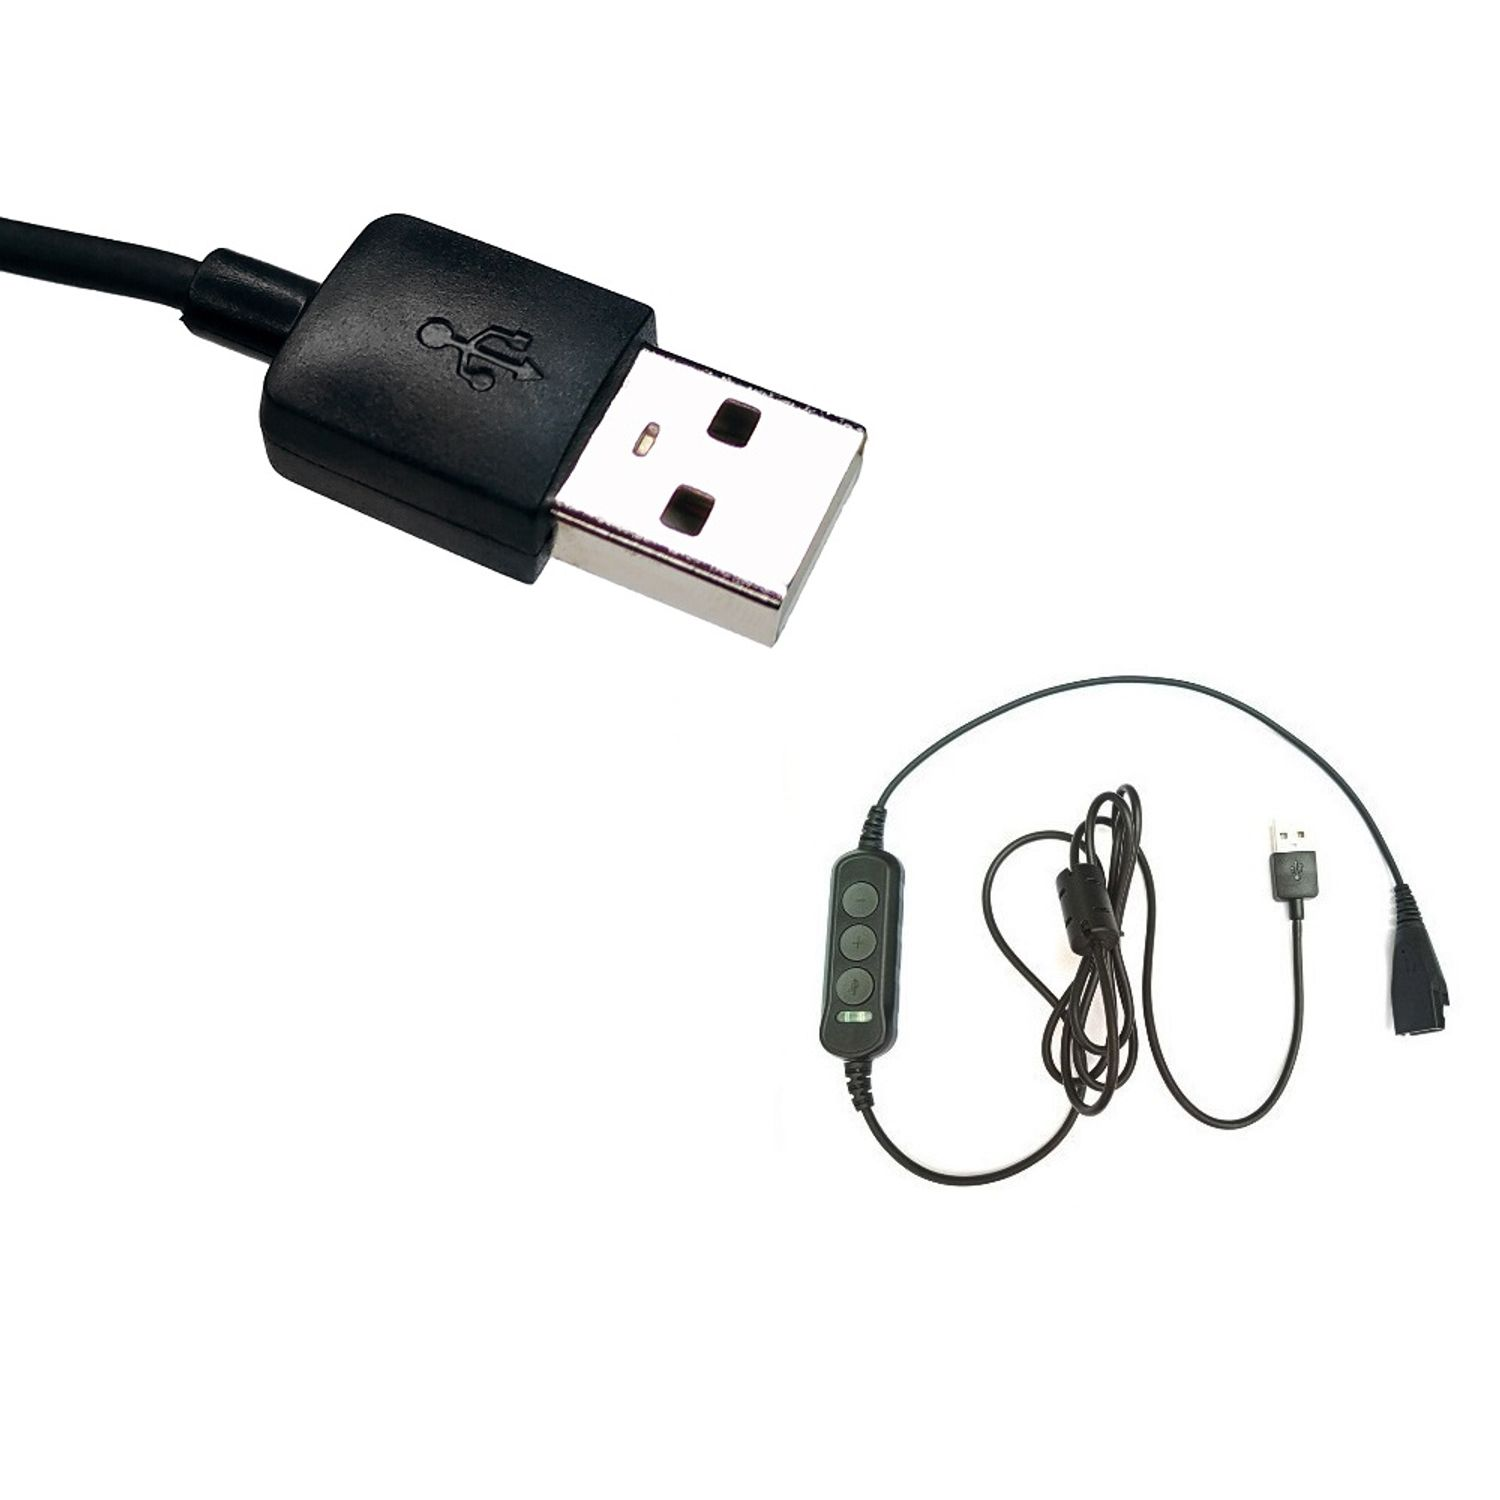 GEQUDIO USB Kabel kompatibel mit Zubehör Schwarz für Mac und PC Headset